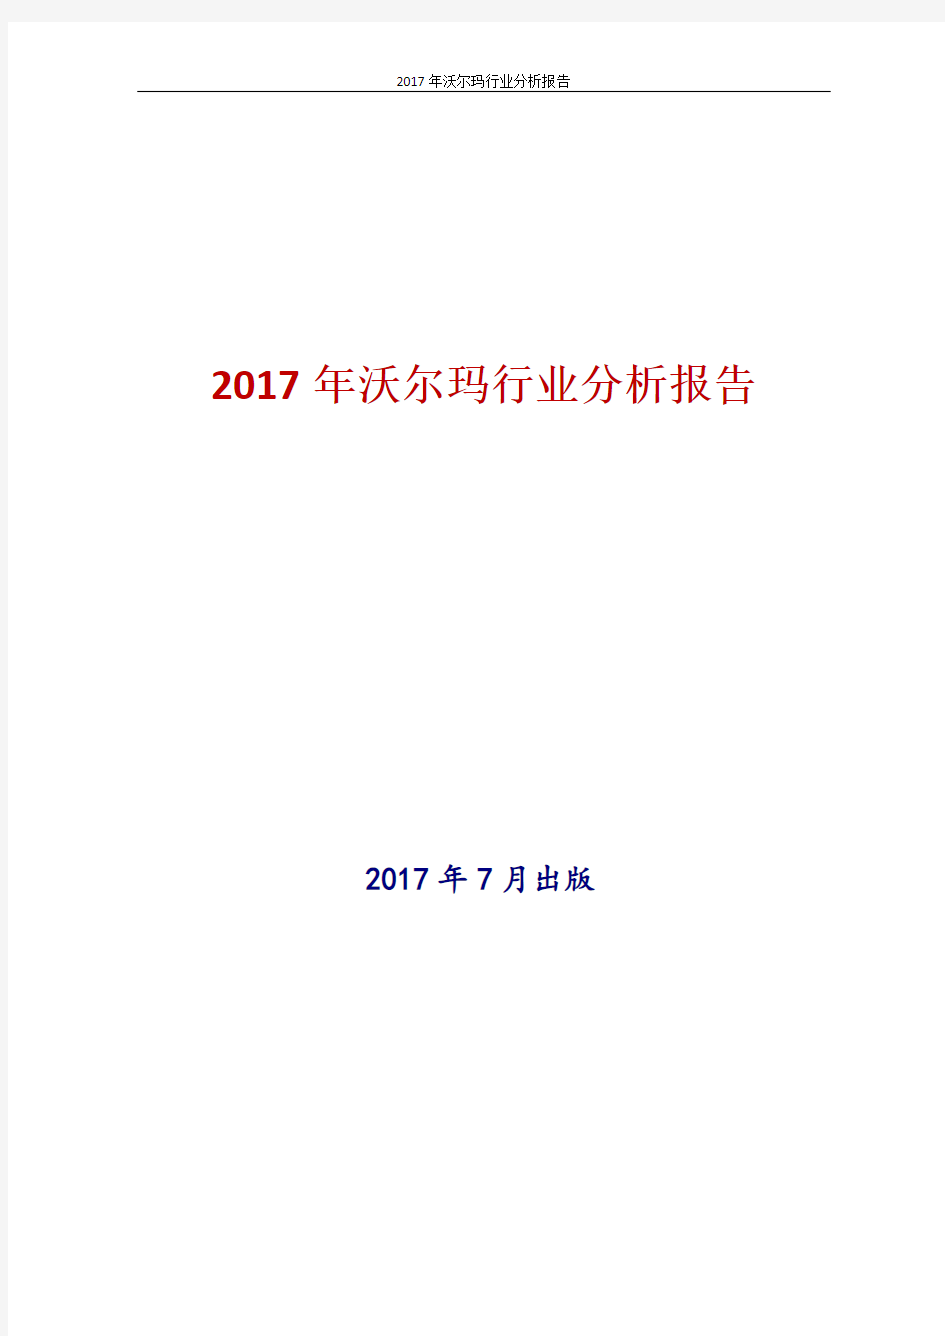 2017年沃尔玛行业分析报告